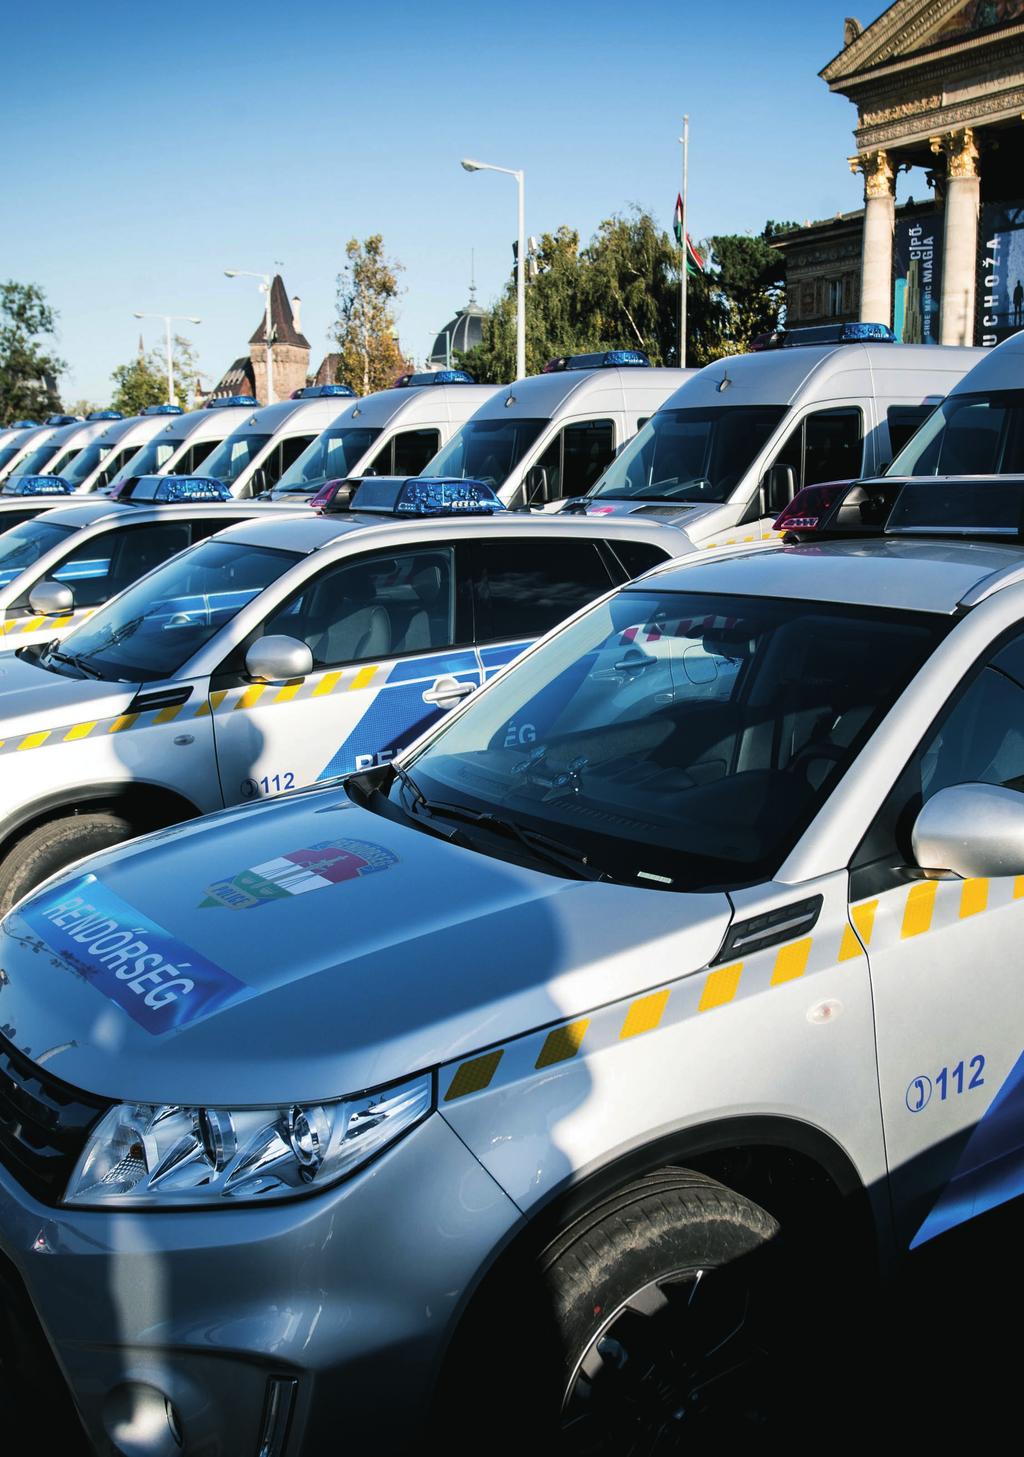 10 A rendőri jellegű személygépkocsipark átlagos életkora 6,4 évről 2,4 évre csökkent.